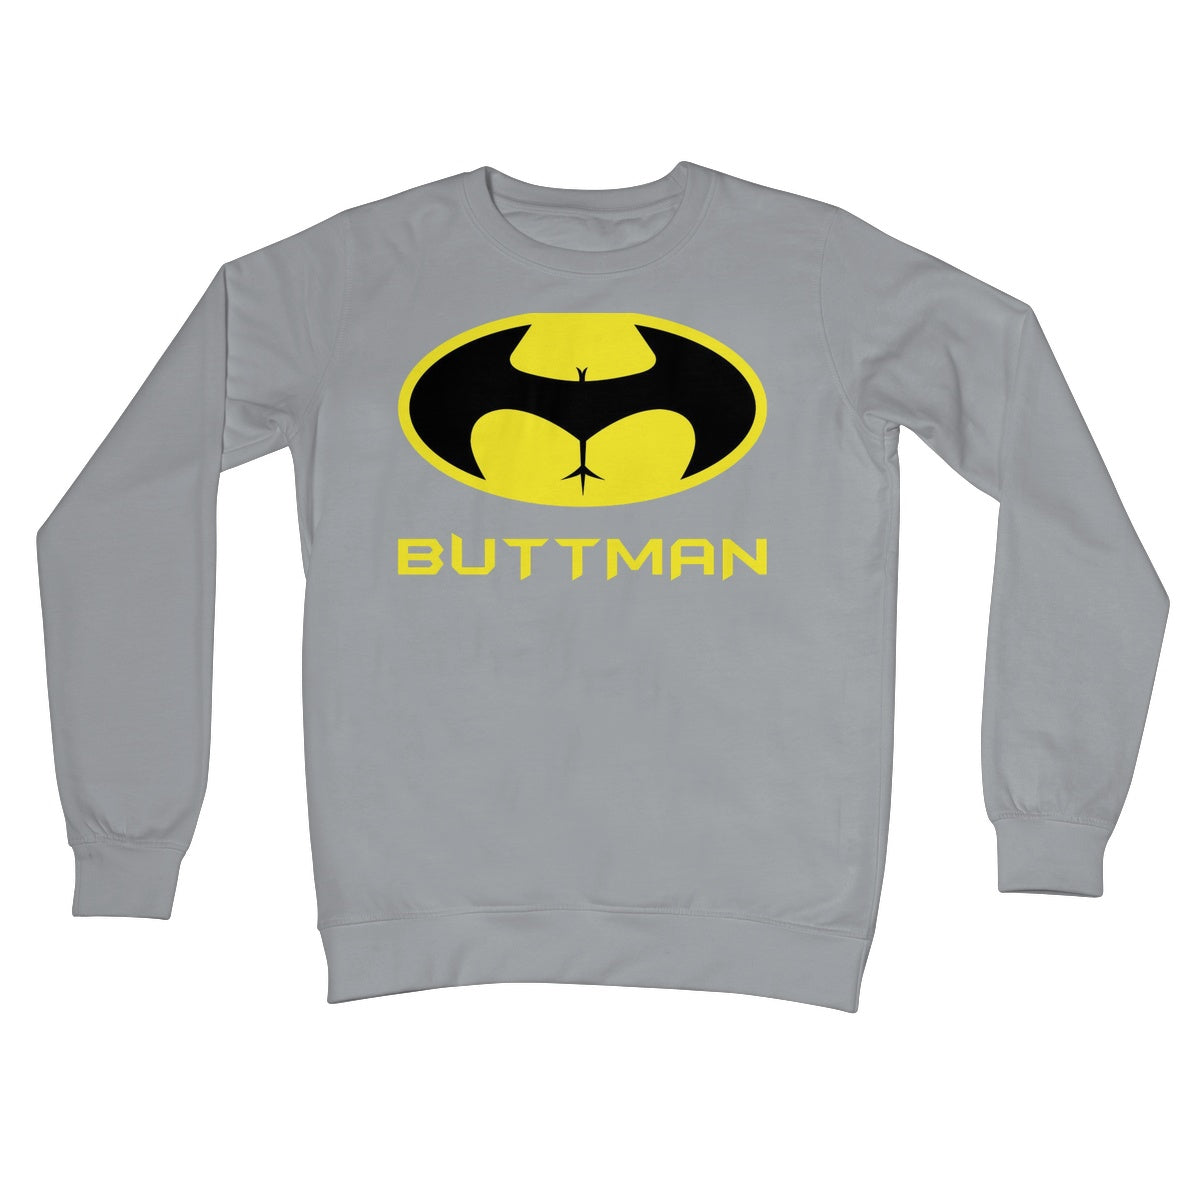 buttman jumper grey